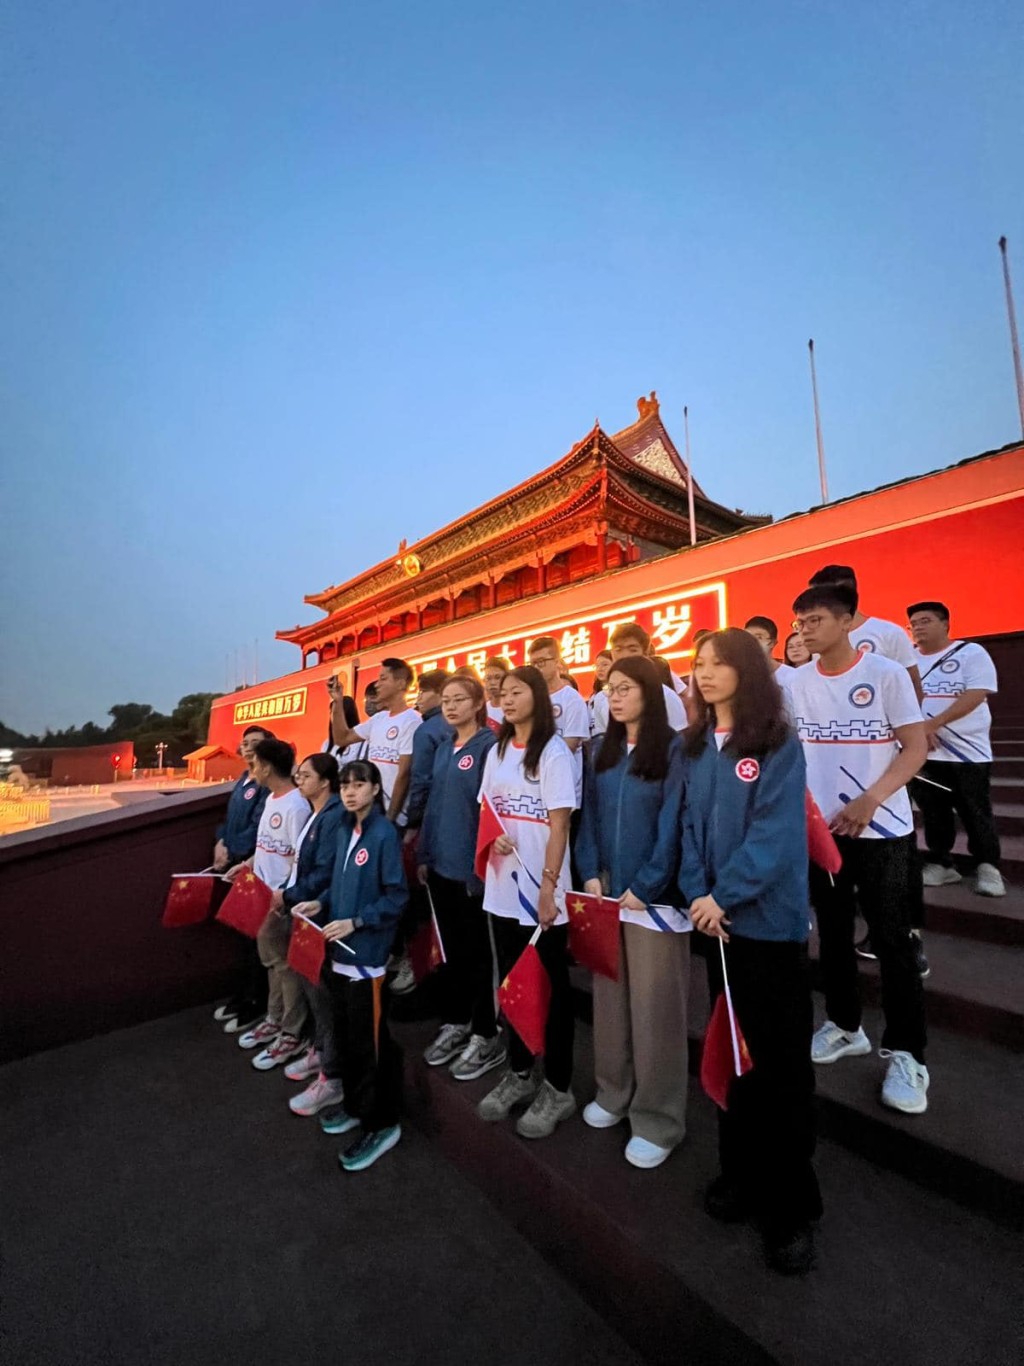 「保安局青少年制服團隊領袖」成員早前訪北京陝西。資料圖片